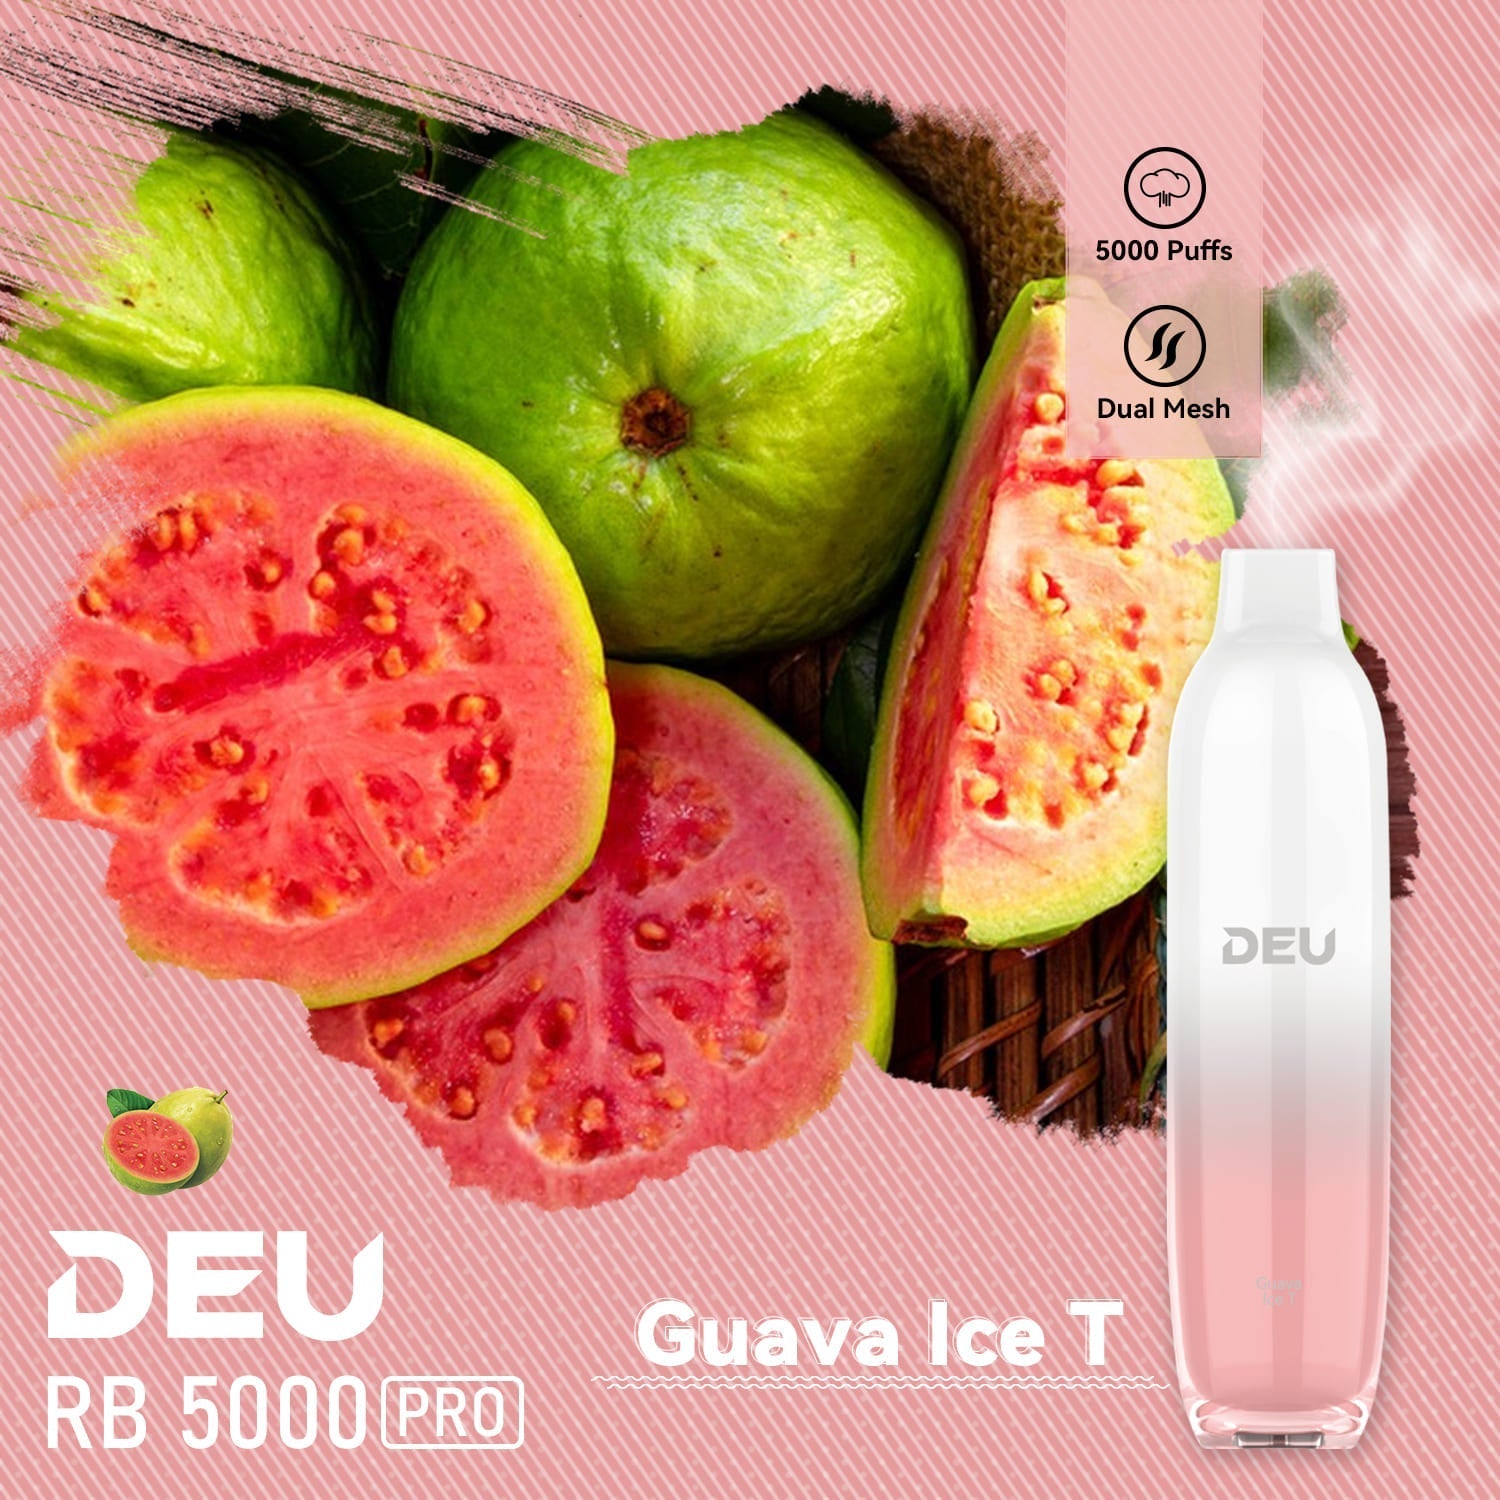 DEU RB5000 Pro - Guava Ice T